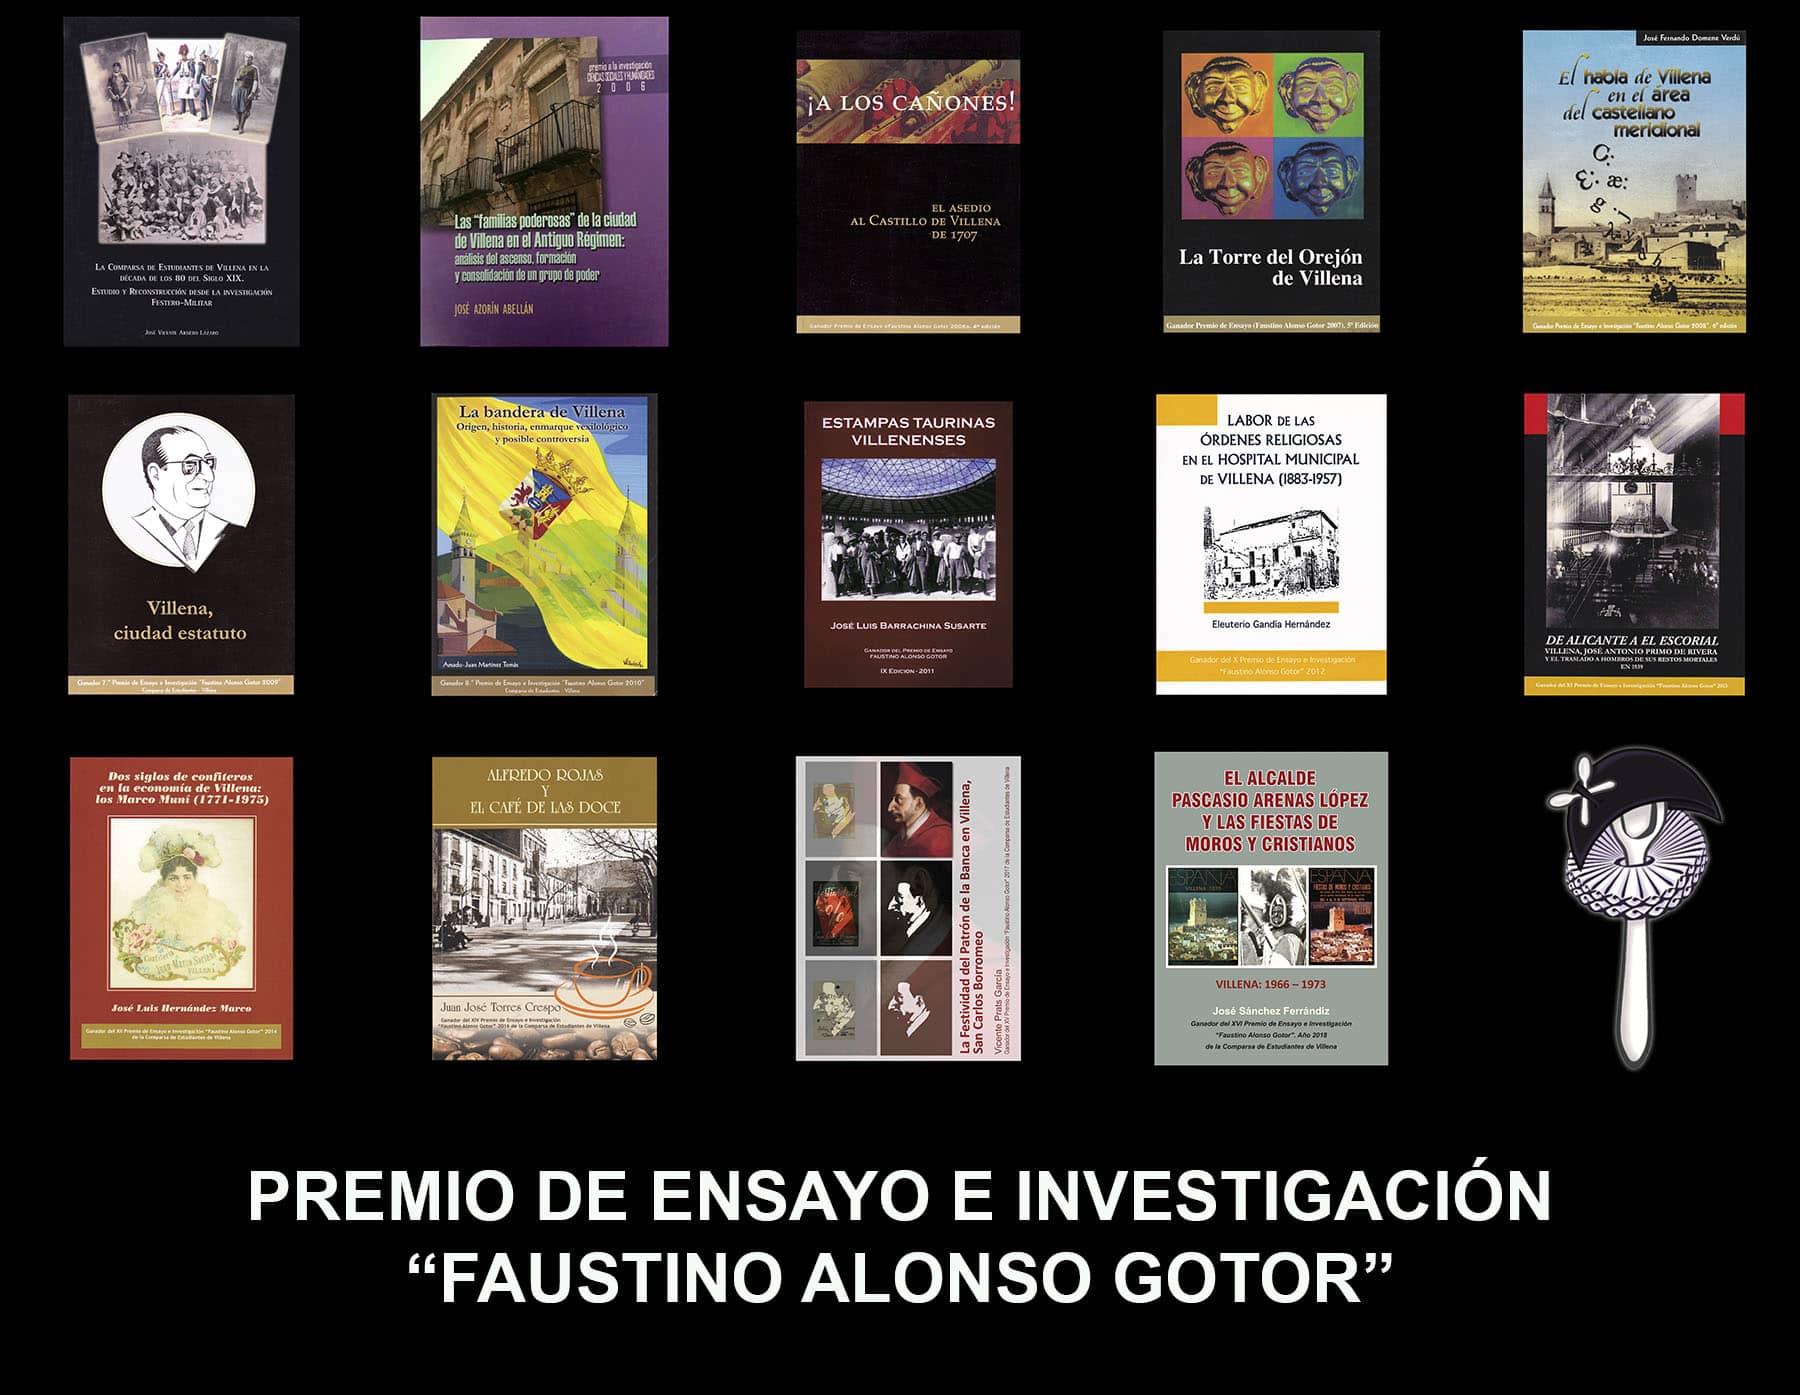 La Comparsa de Estudiantes de Villena convoca la edición XVII del Premio de Ensayo e Investigación “Faustino Alonso Gotor”